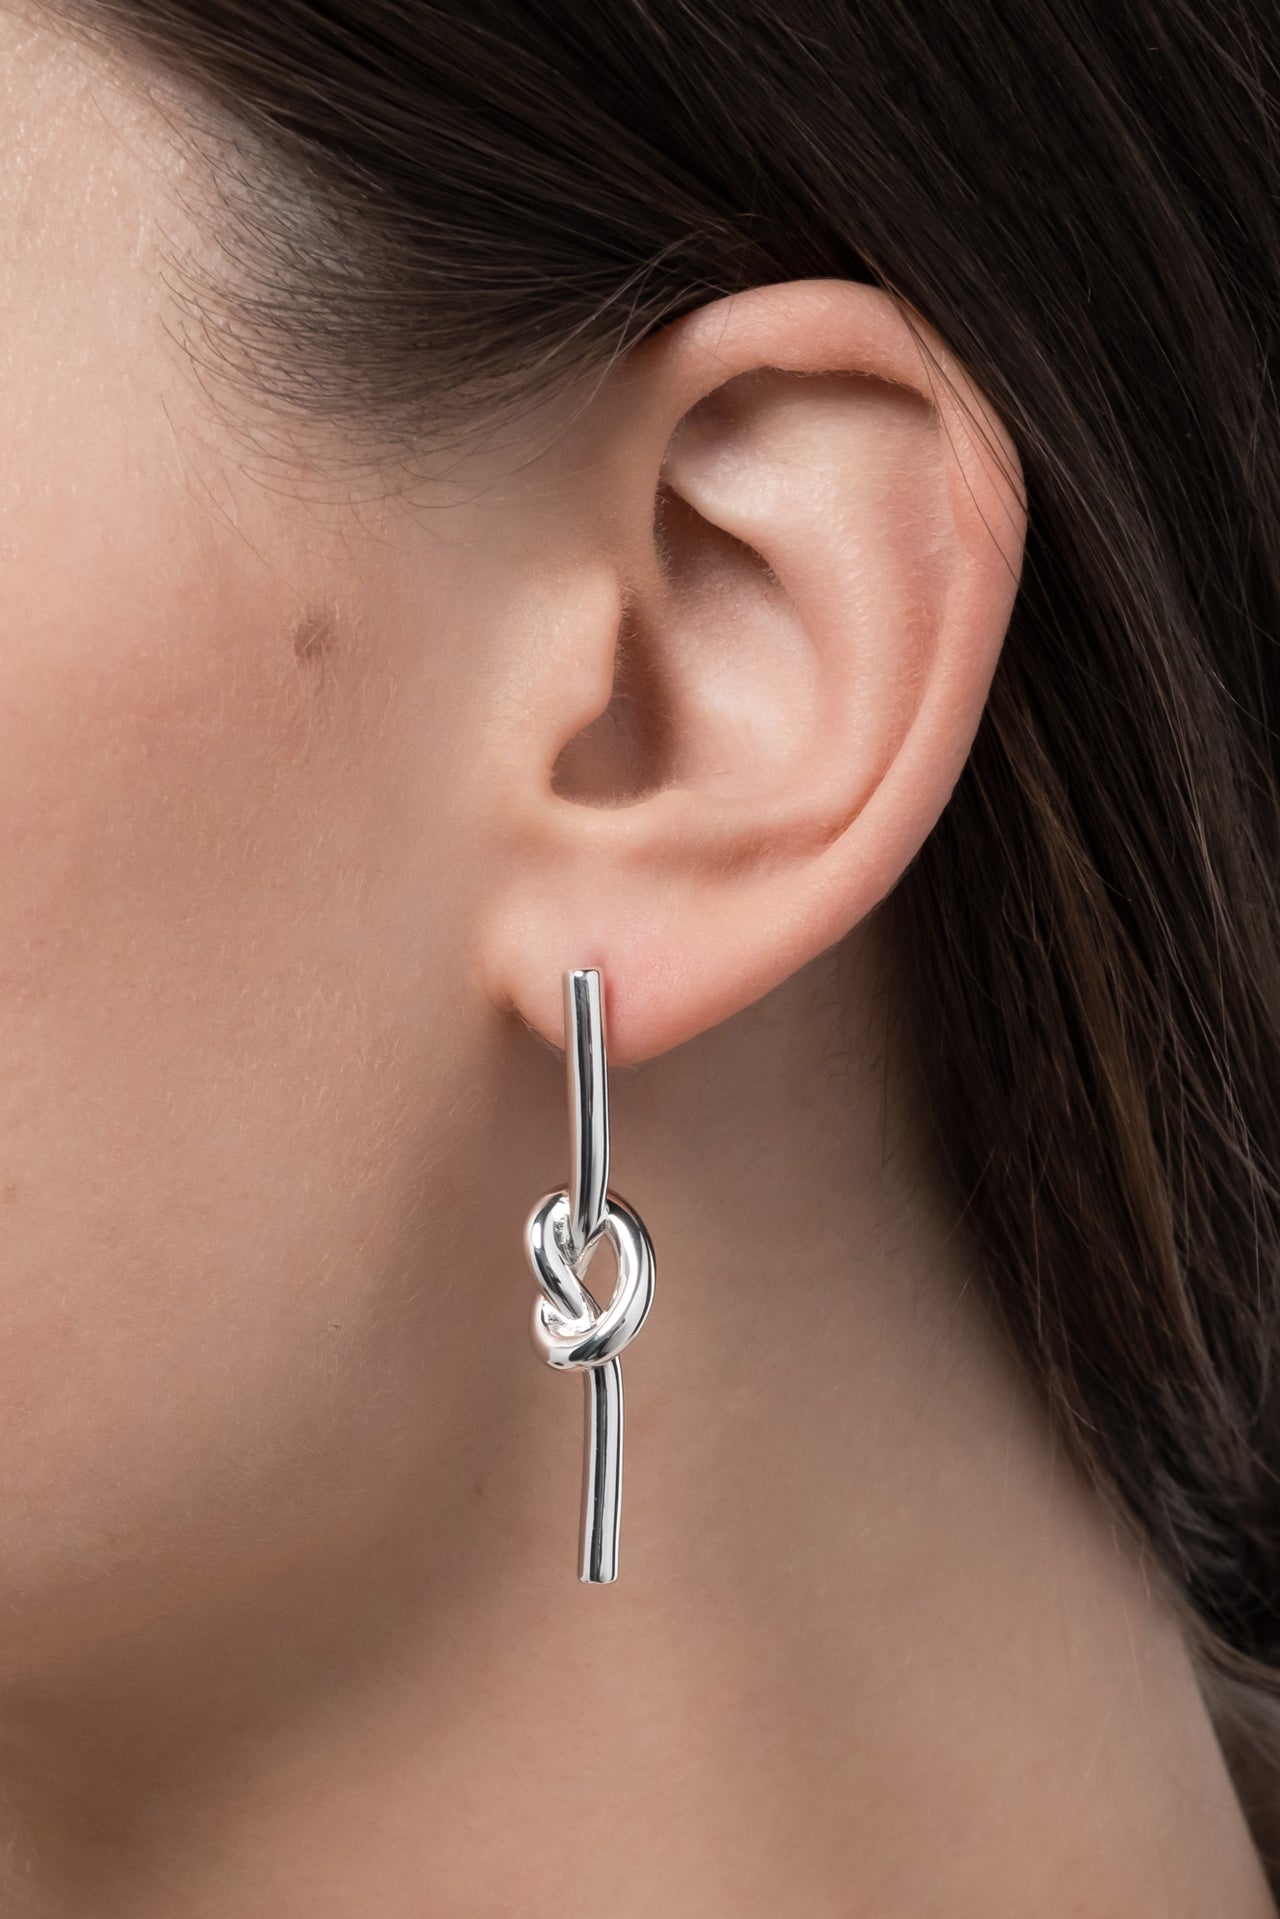 Knot earrings silver